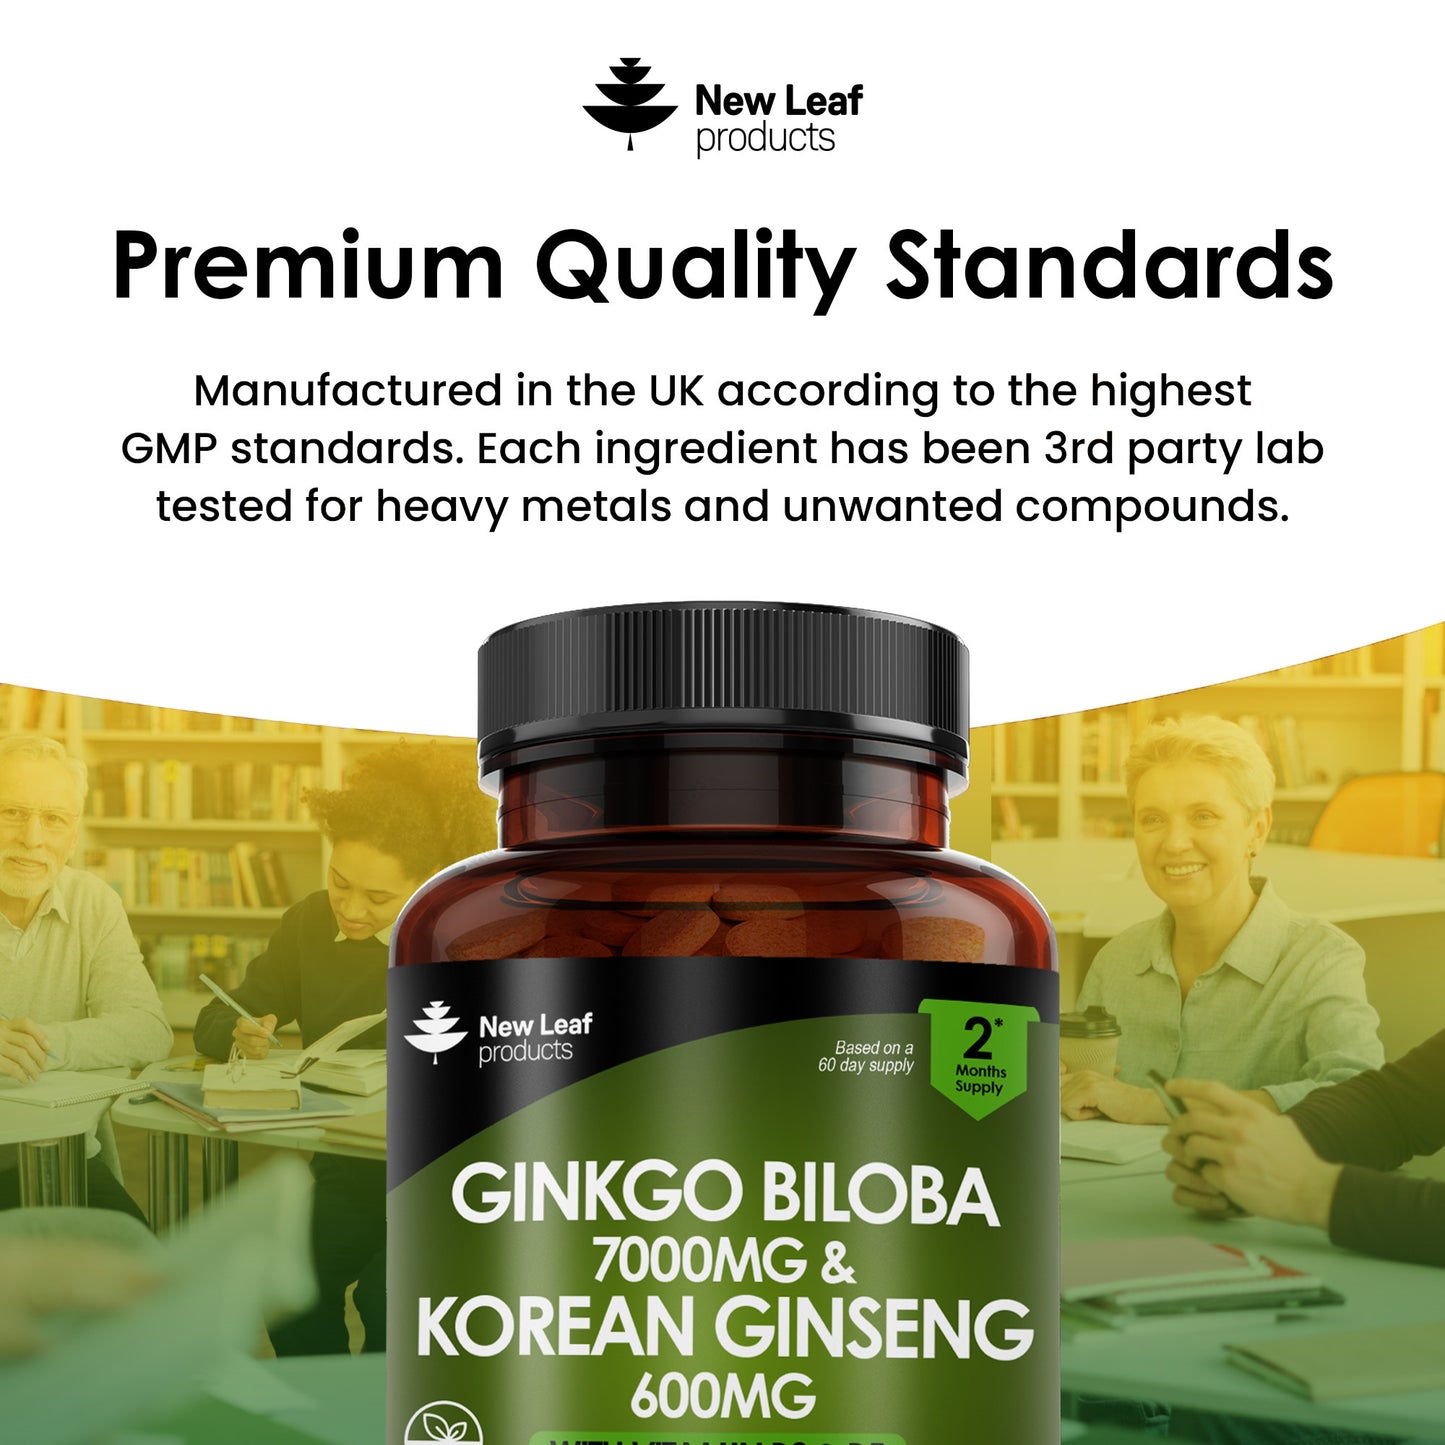 Ginkgo Biloba 7000mg & Korean (Panax) Ginseng 600mg Tablets with Vitamin B3 & B5 120 Tablets